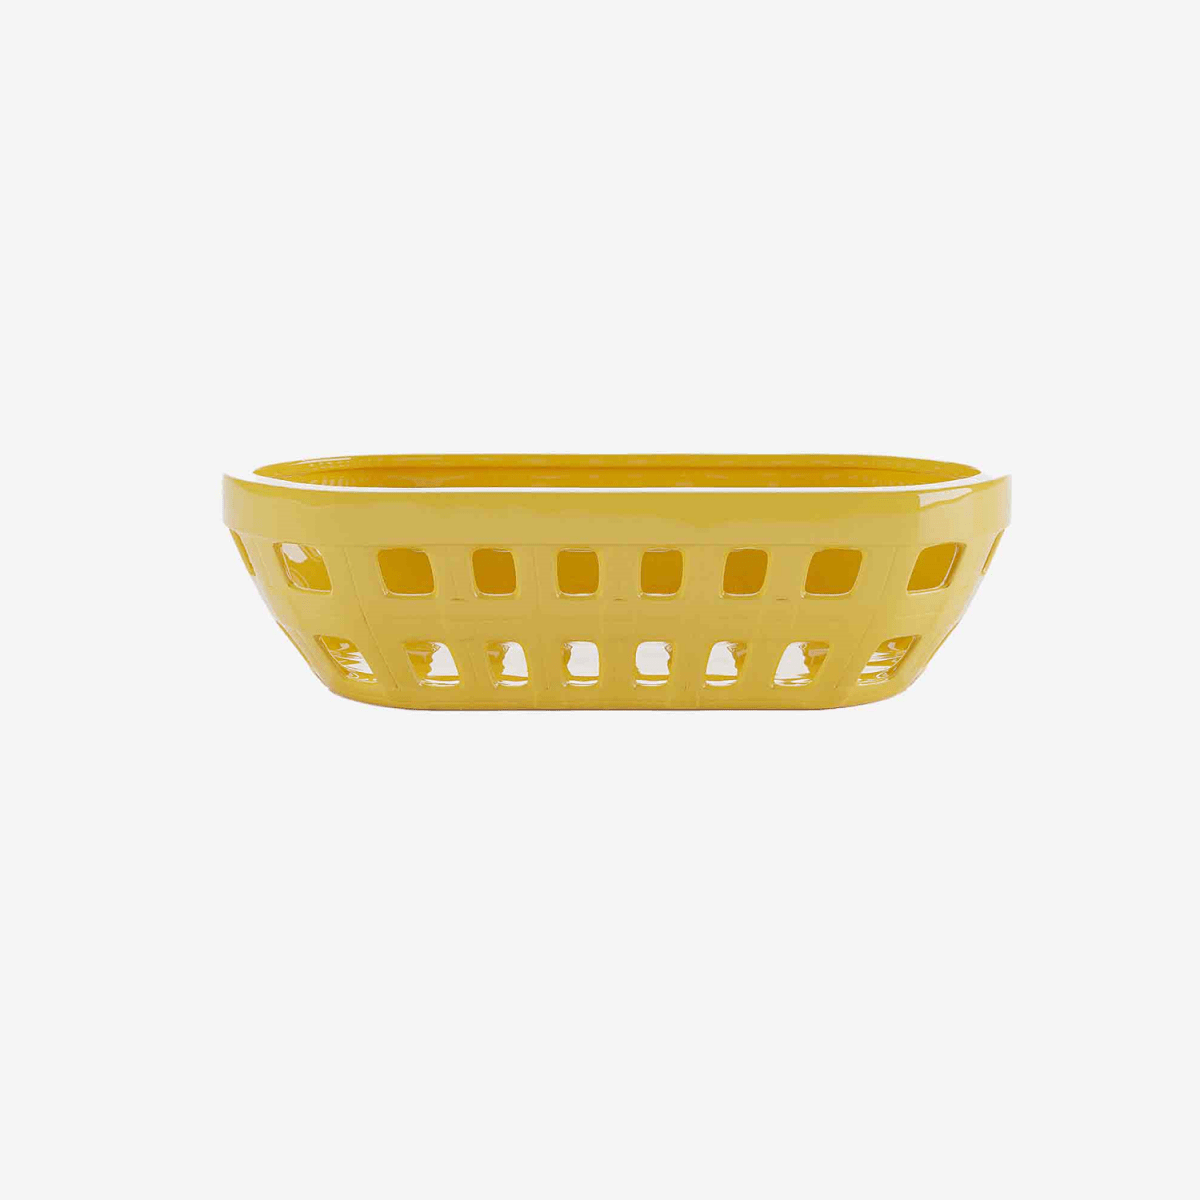 Objet art déco design : Corbeille à pain de style vintage céramique jaune- Potiron Paris, site de déco pas cher